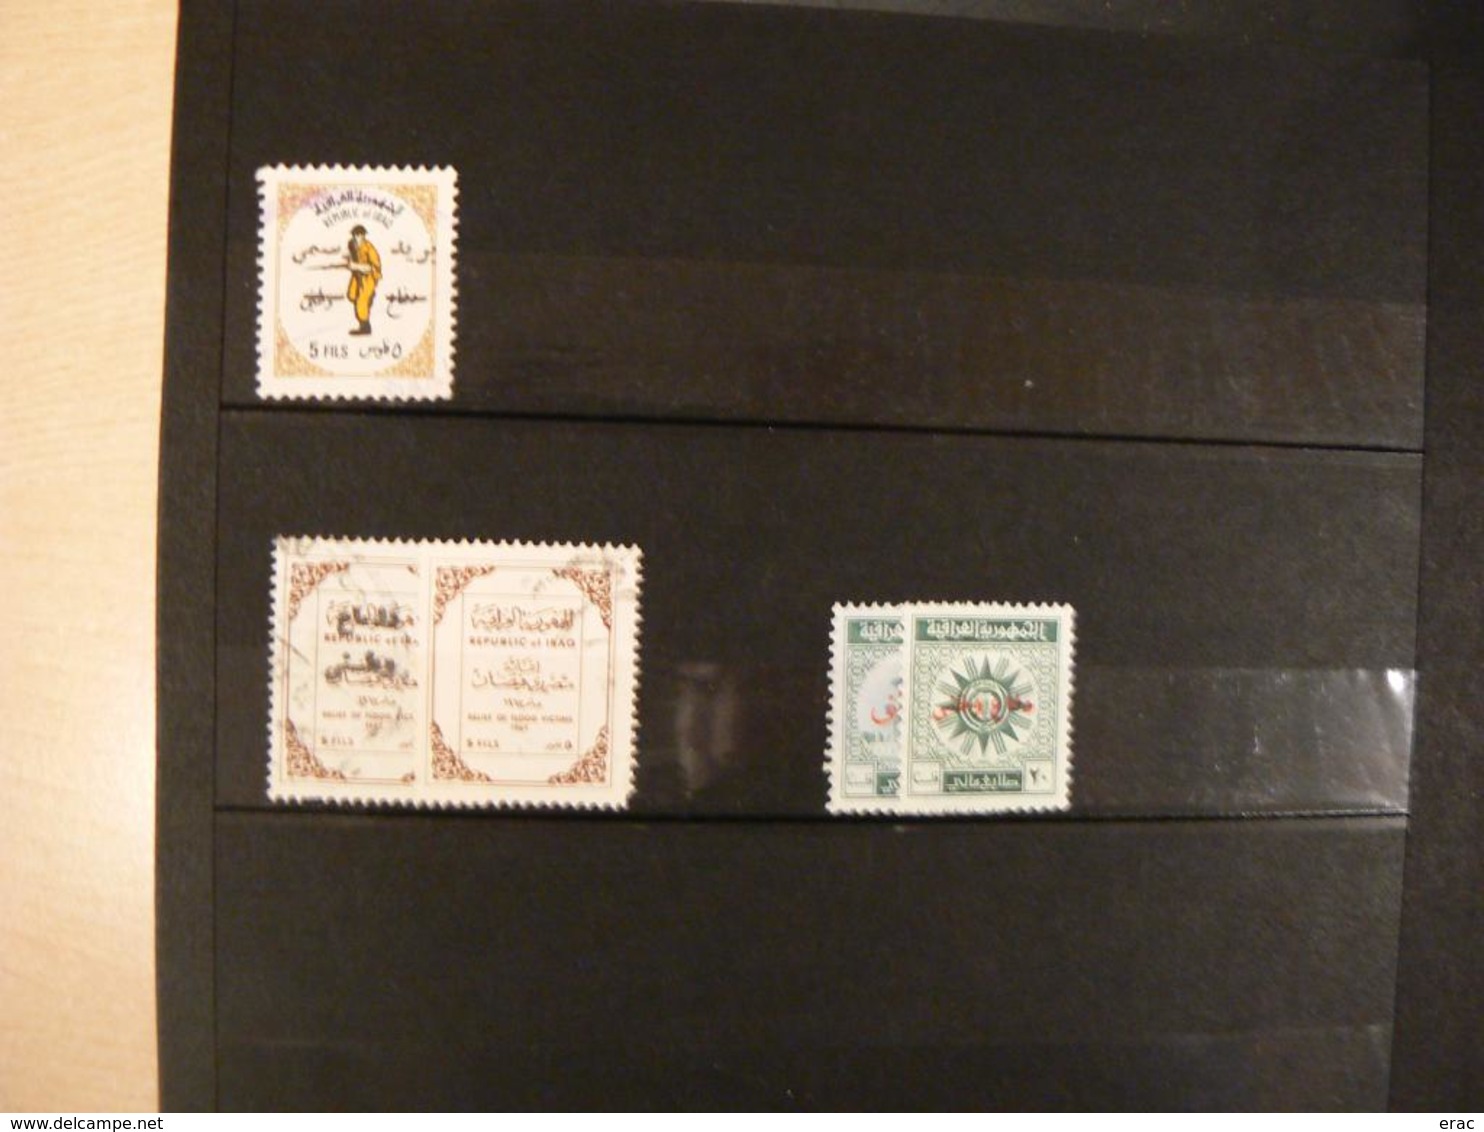 IRAK - Collection de timbres oblitérés toutes périodes dans un petit album